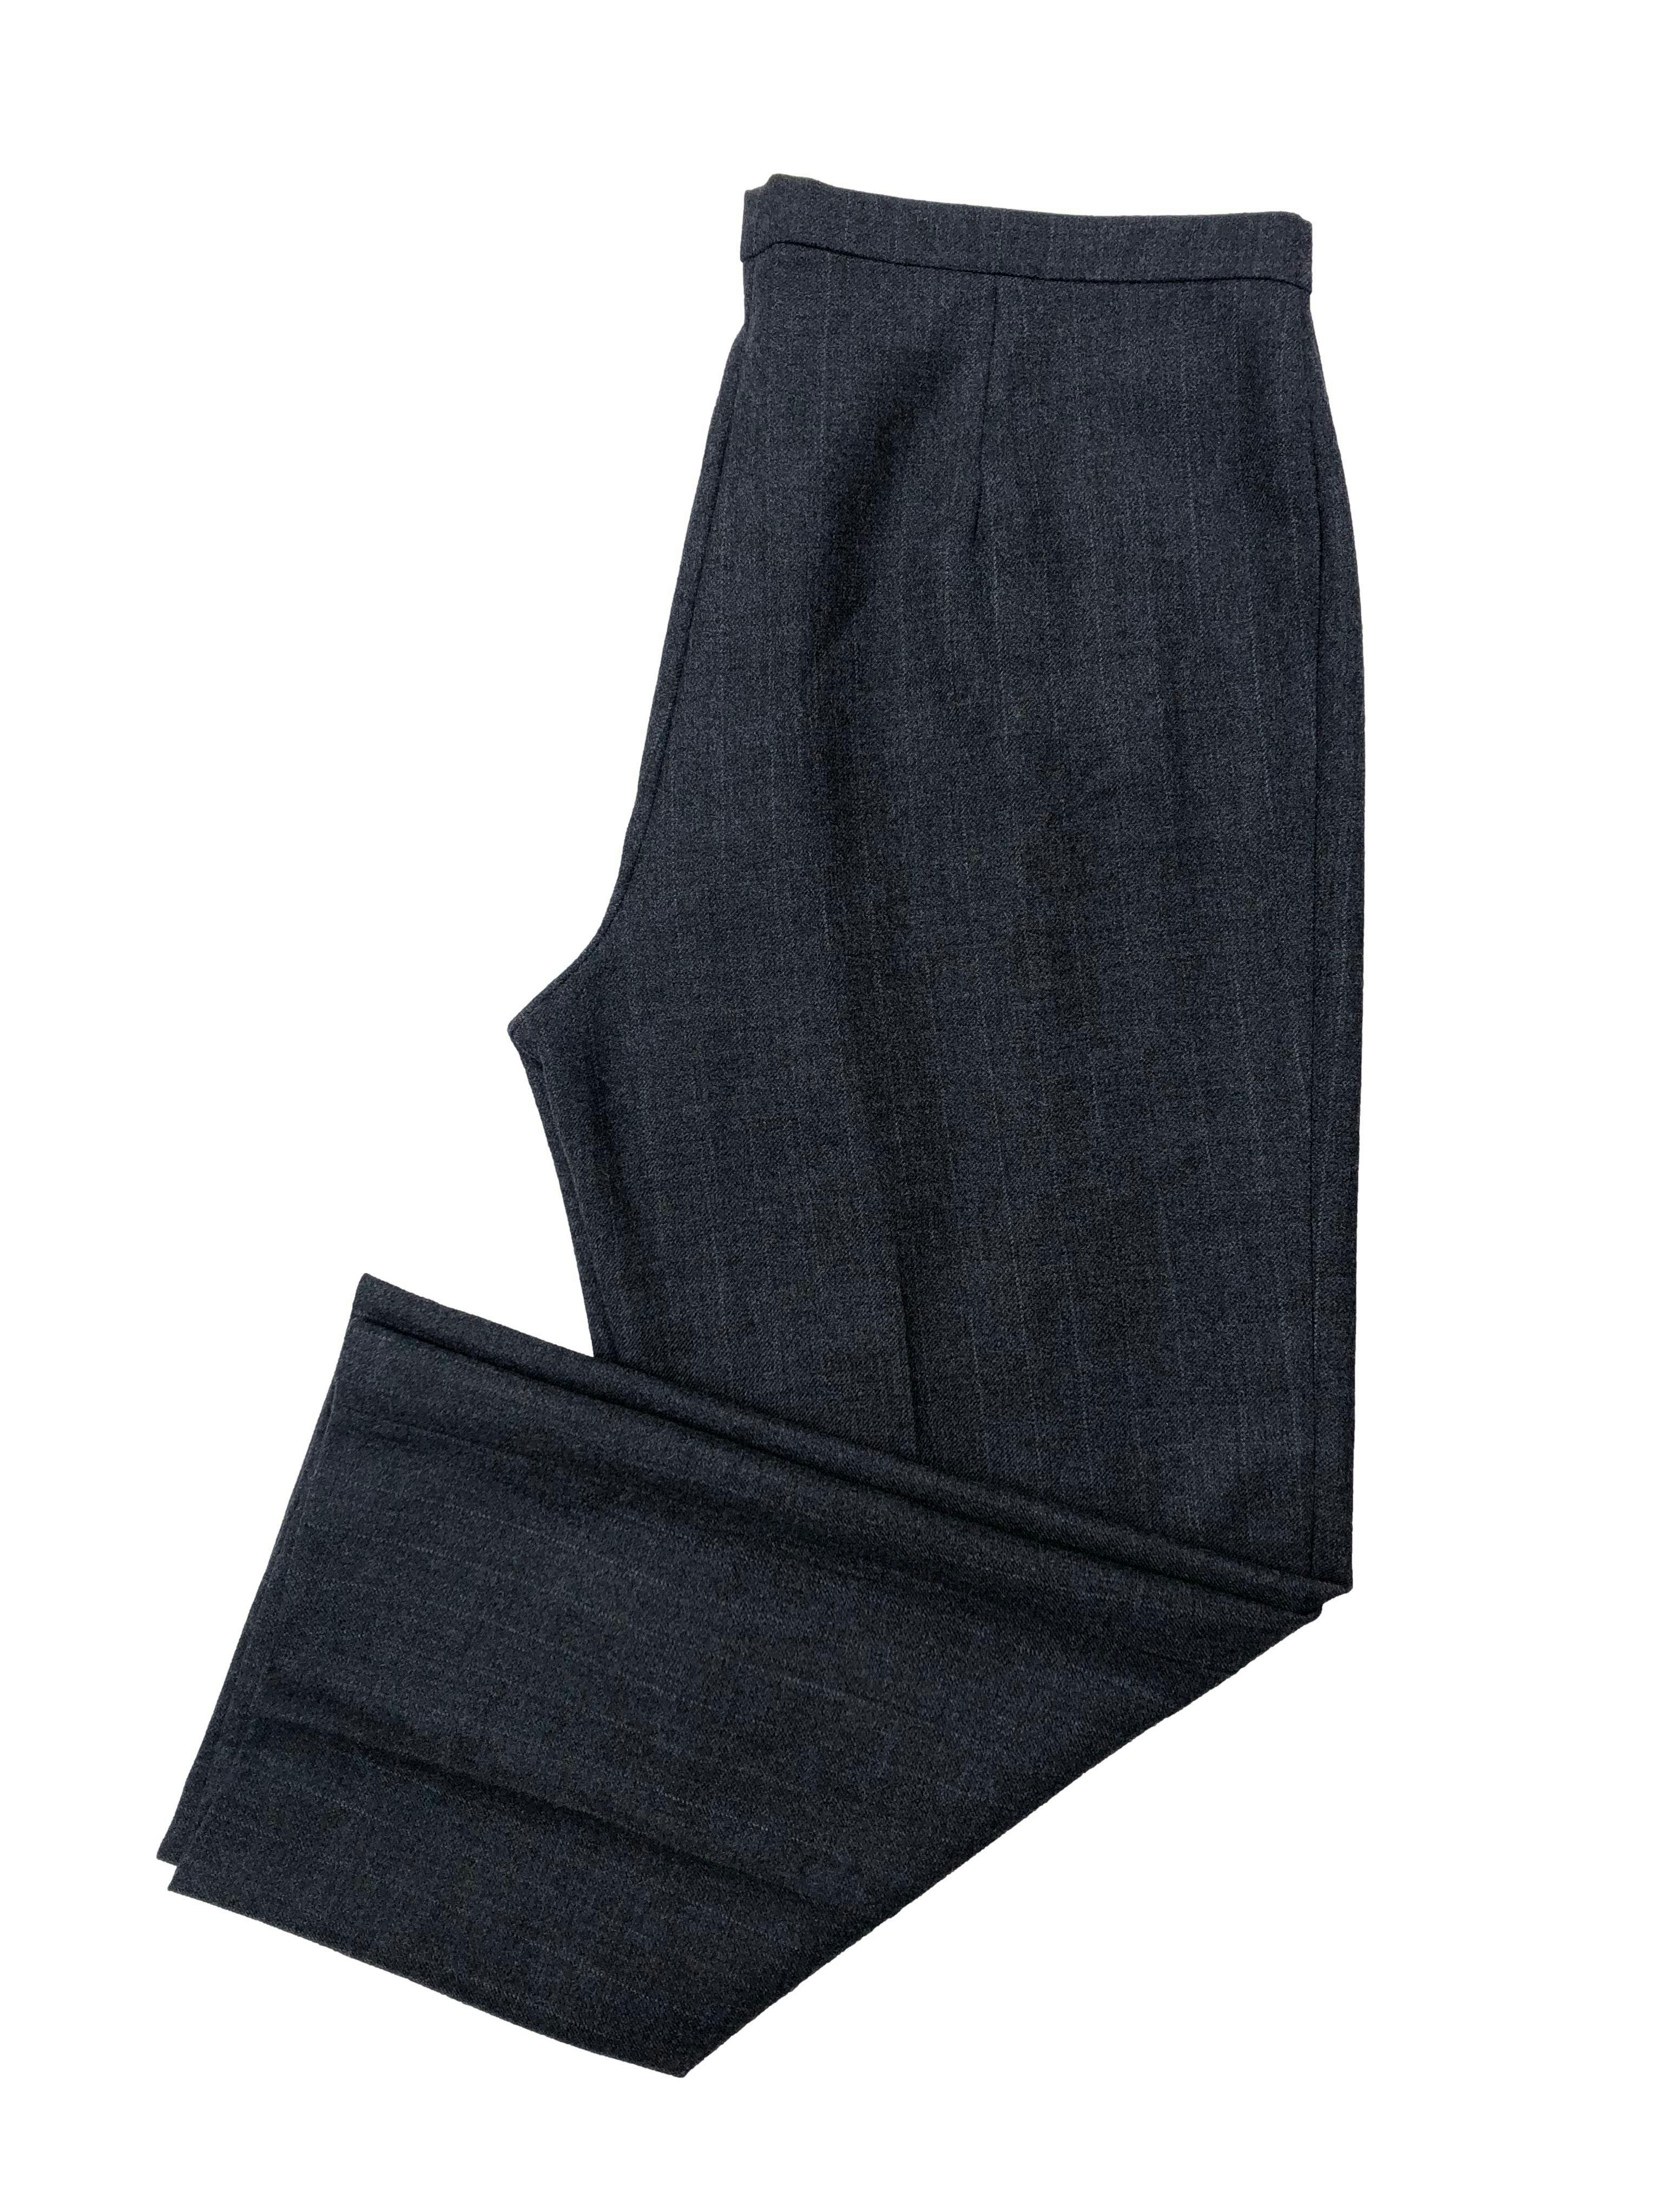 Pantalón sastre gris 100% lana, corte recto con pinzas. Cintura 94cm, Tiro 32cm, Largo 102cm.